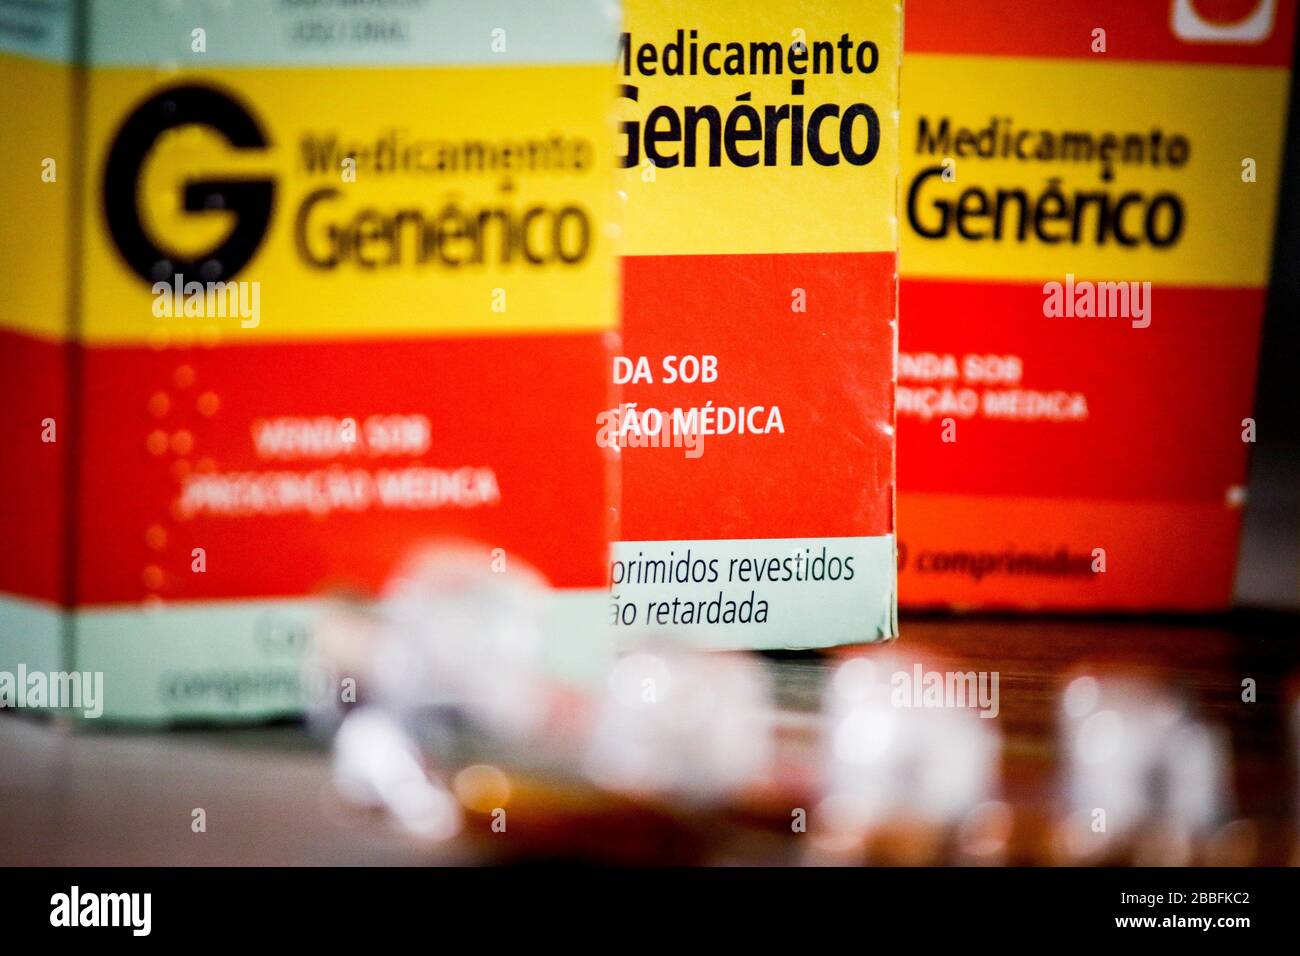 SÃO PAULO, SP - 31.03.2020: REAJUSTE NO PREÇO MÁXIMO DE MEDICAMENTOS - es beginnt an diesem Mittwoch (01), die Anpassung in der Tabelle der Höchstpreise für Medikamente zur kontinuierlichen Anwendung bei der Behandlung schwerer Krankheiten. Nach Schätzungen der Industriegewerkschaft Pharmazeutische Produkte (Sindusfarma) wird der Anstieg bei Arzneimitteln, deren Markt wenig Konkurrenz durch Generika hat, bei Arzneimitteln um 3,23 %, bei Arzneimitteln mit mittlerer Konzentration um 4,22 % steigen. Die größte Anpassung wird sich auf Medikamente mit stärkerem Wettbewerb, die Erhöhung wird 5,21%. (Foto: Aloisio Mauricio/Fotoarena Stockfoto